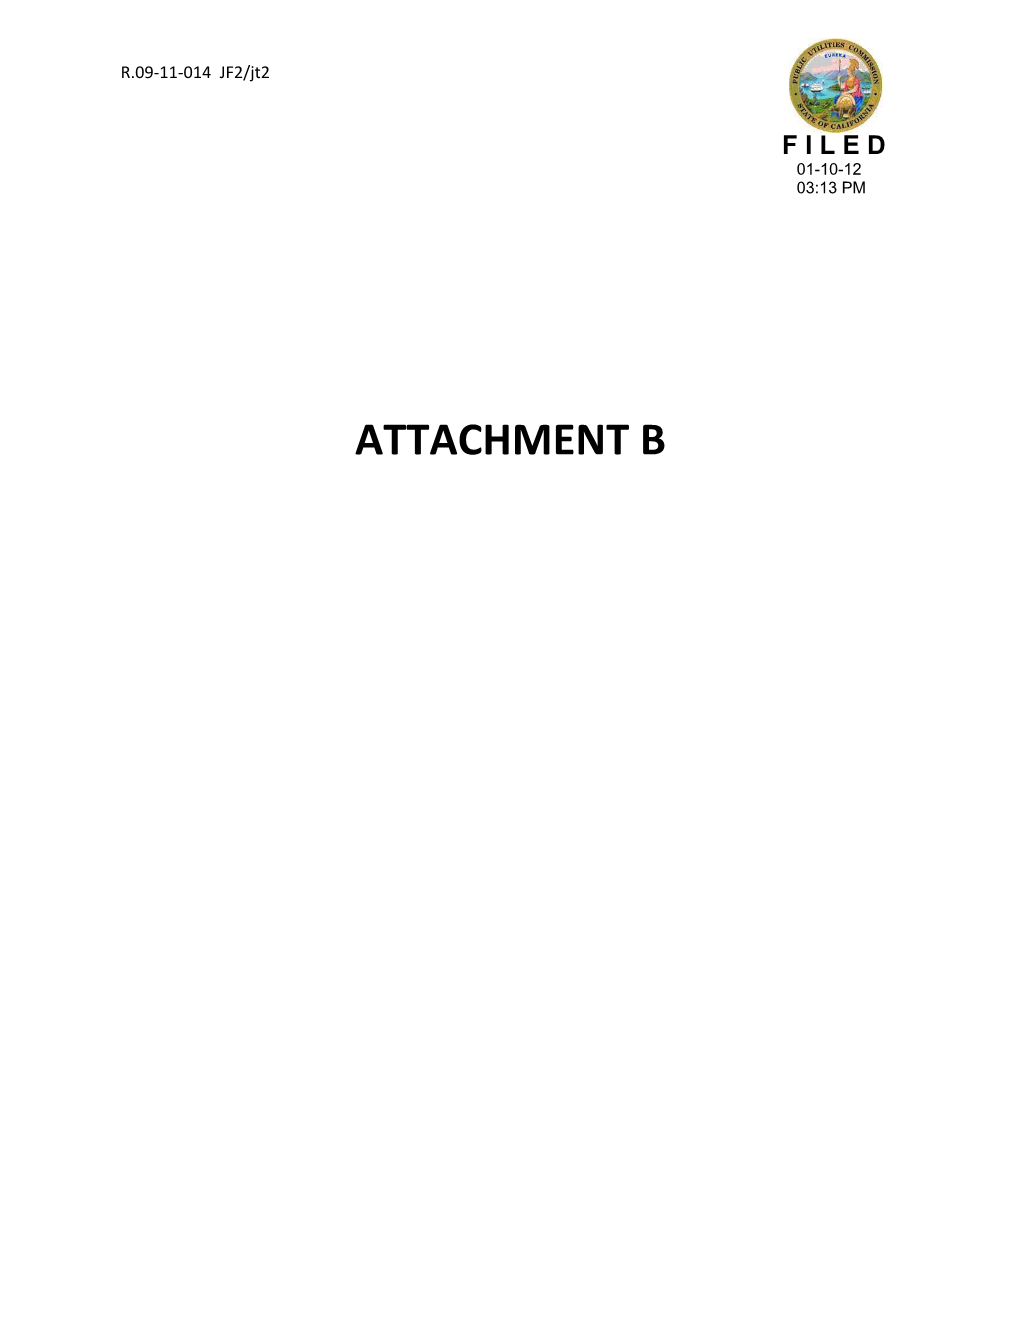 Attachment B